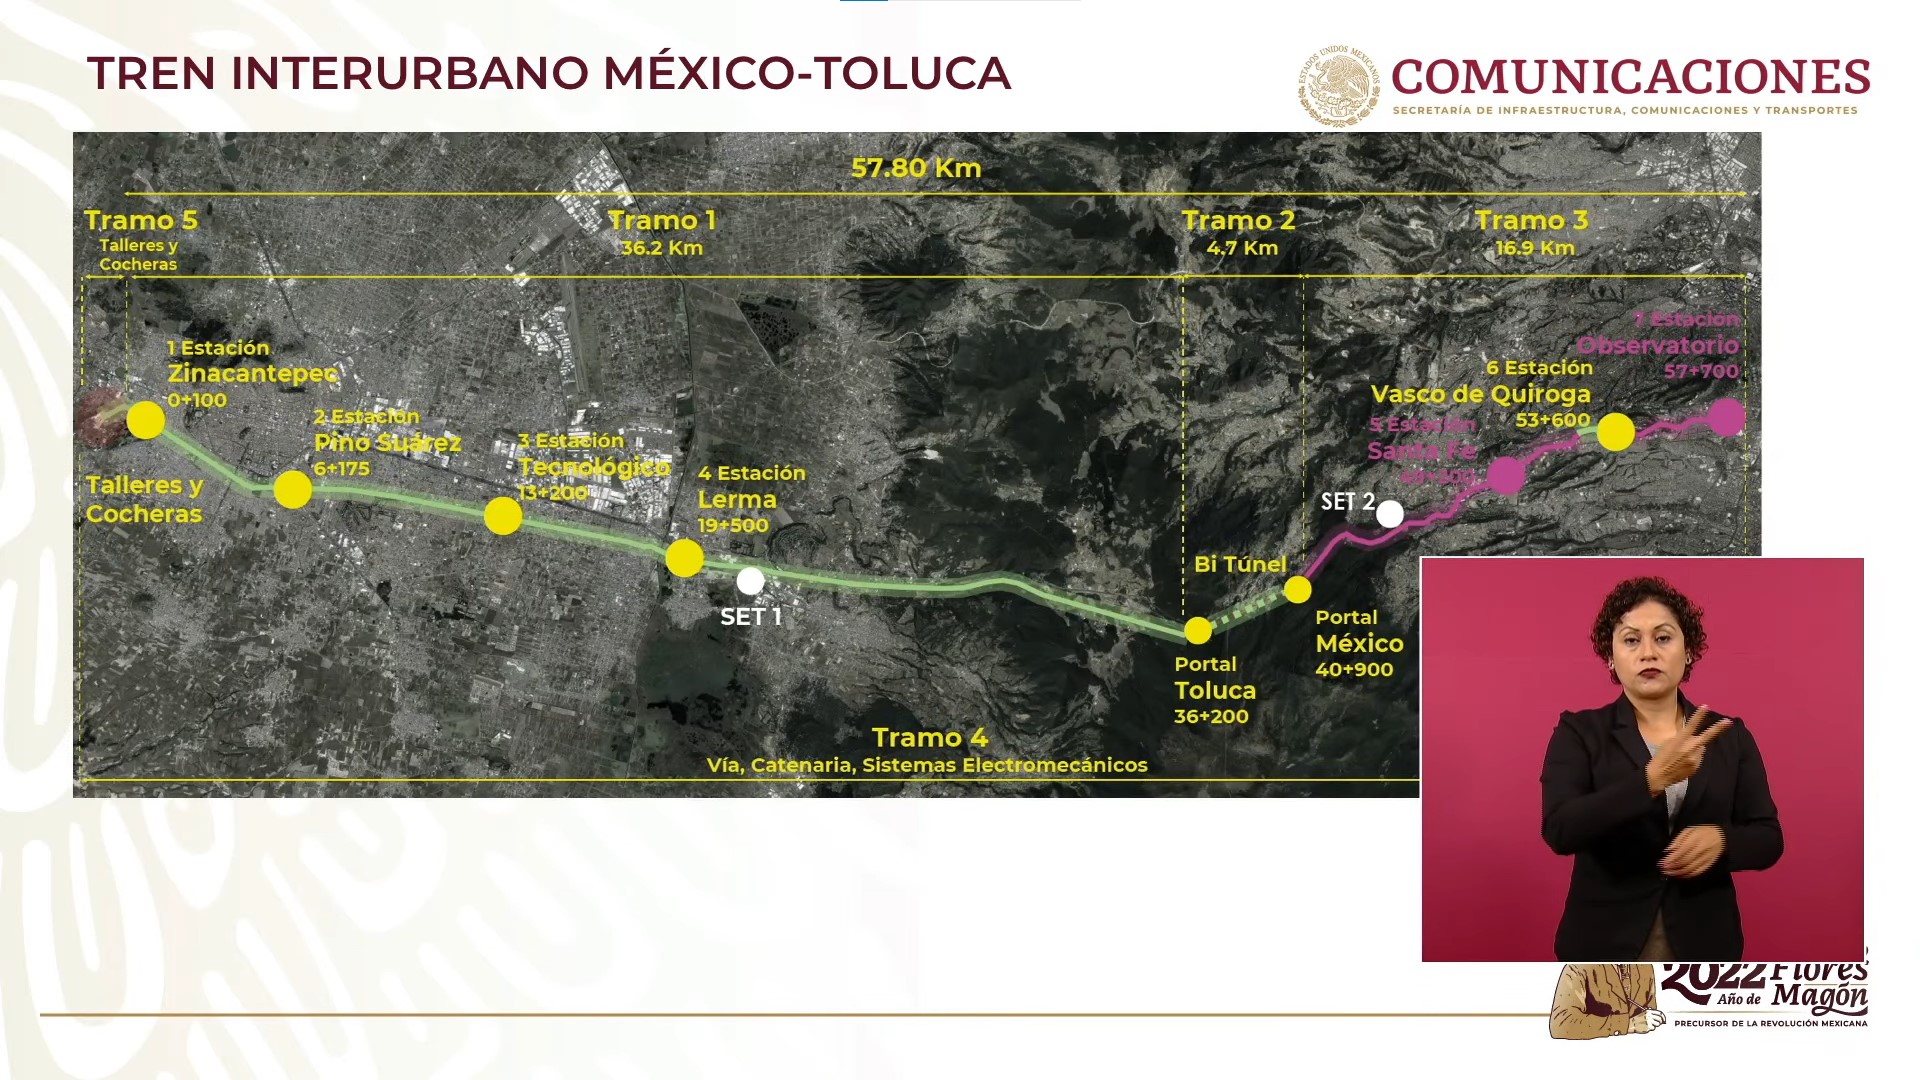 El Tren Interurbano México-Toluca realizará su recorrido en 39 minutos. (Gobierno de México).